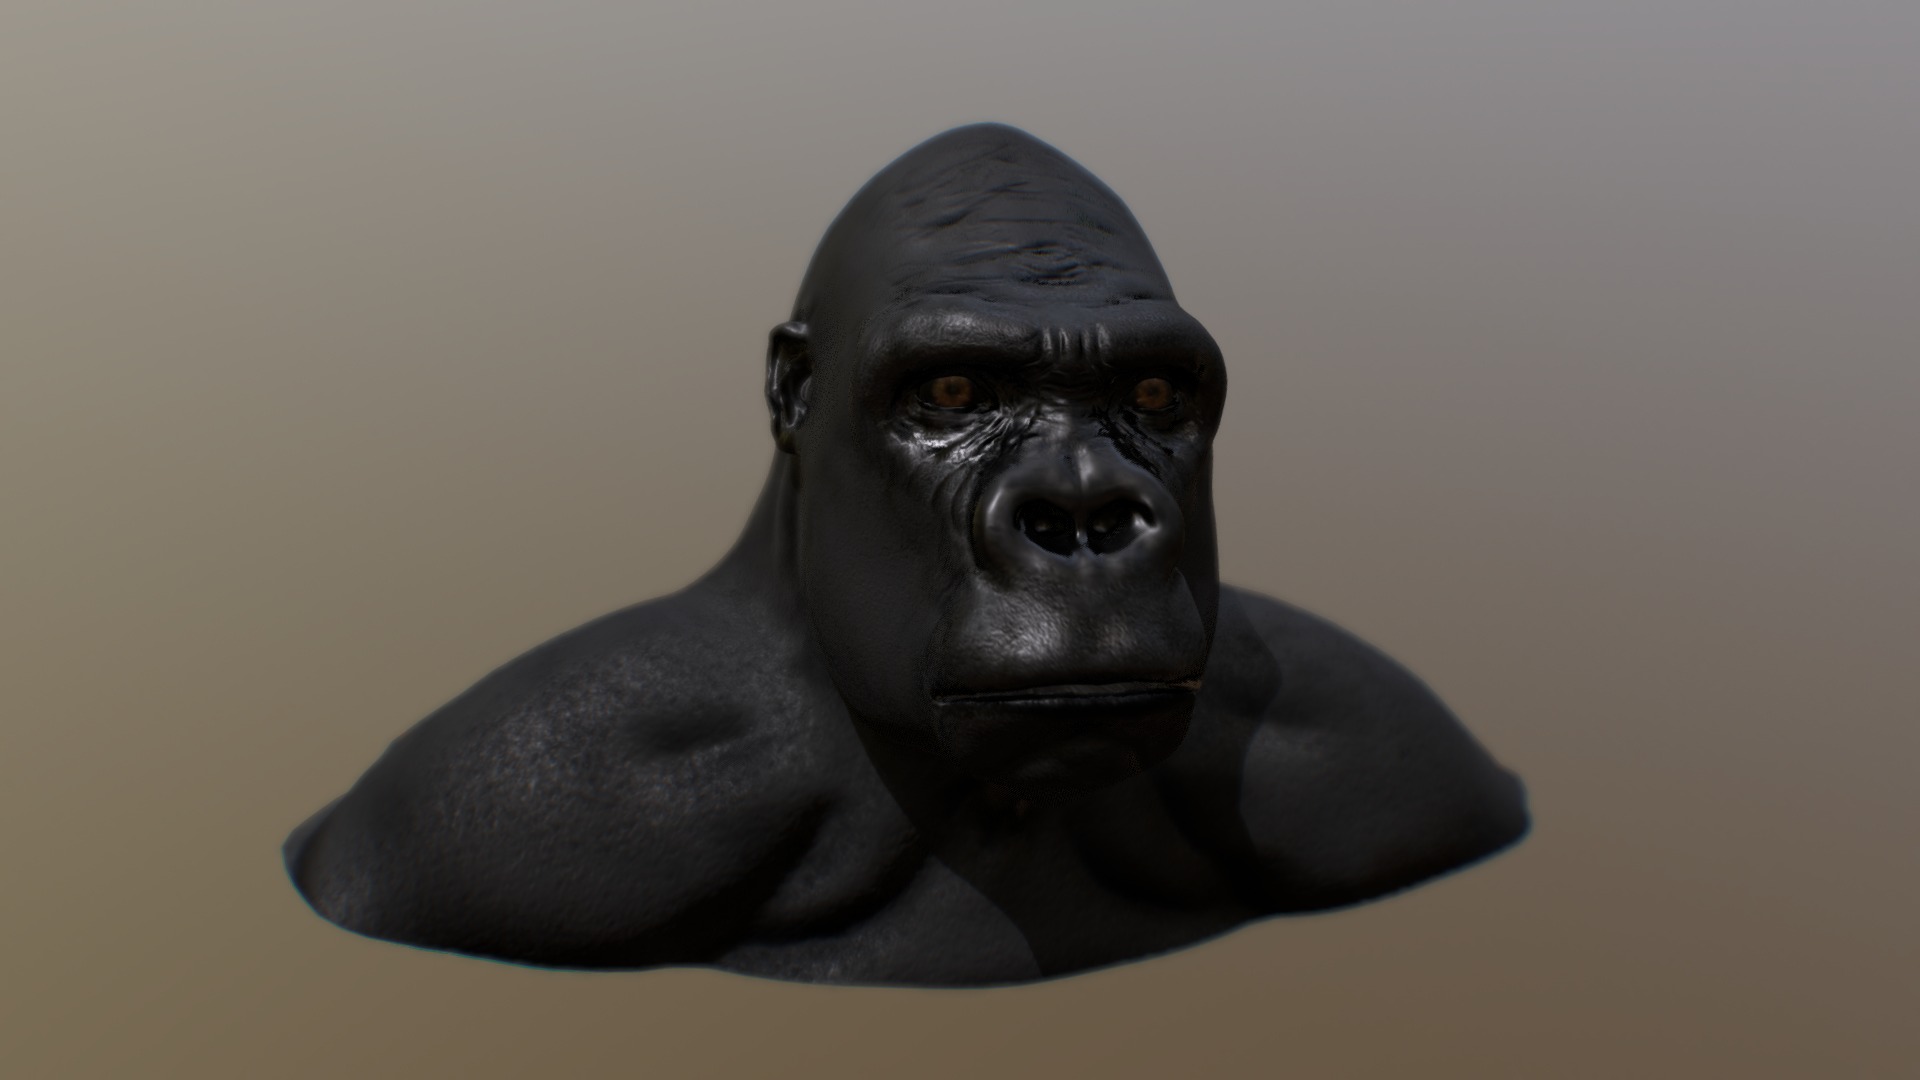 all work using blender - Gorilla - 3D model by Mohamed Fathi (@MohamedFathi) 3d model